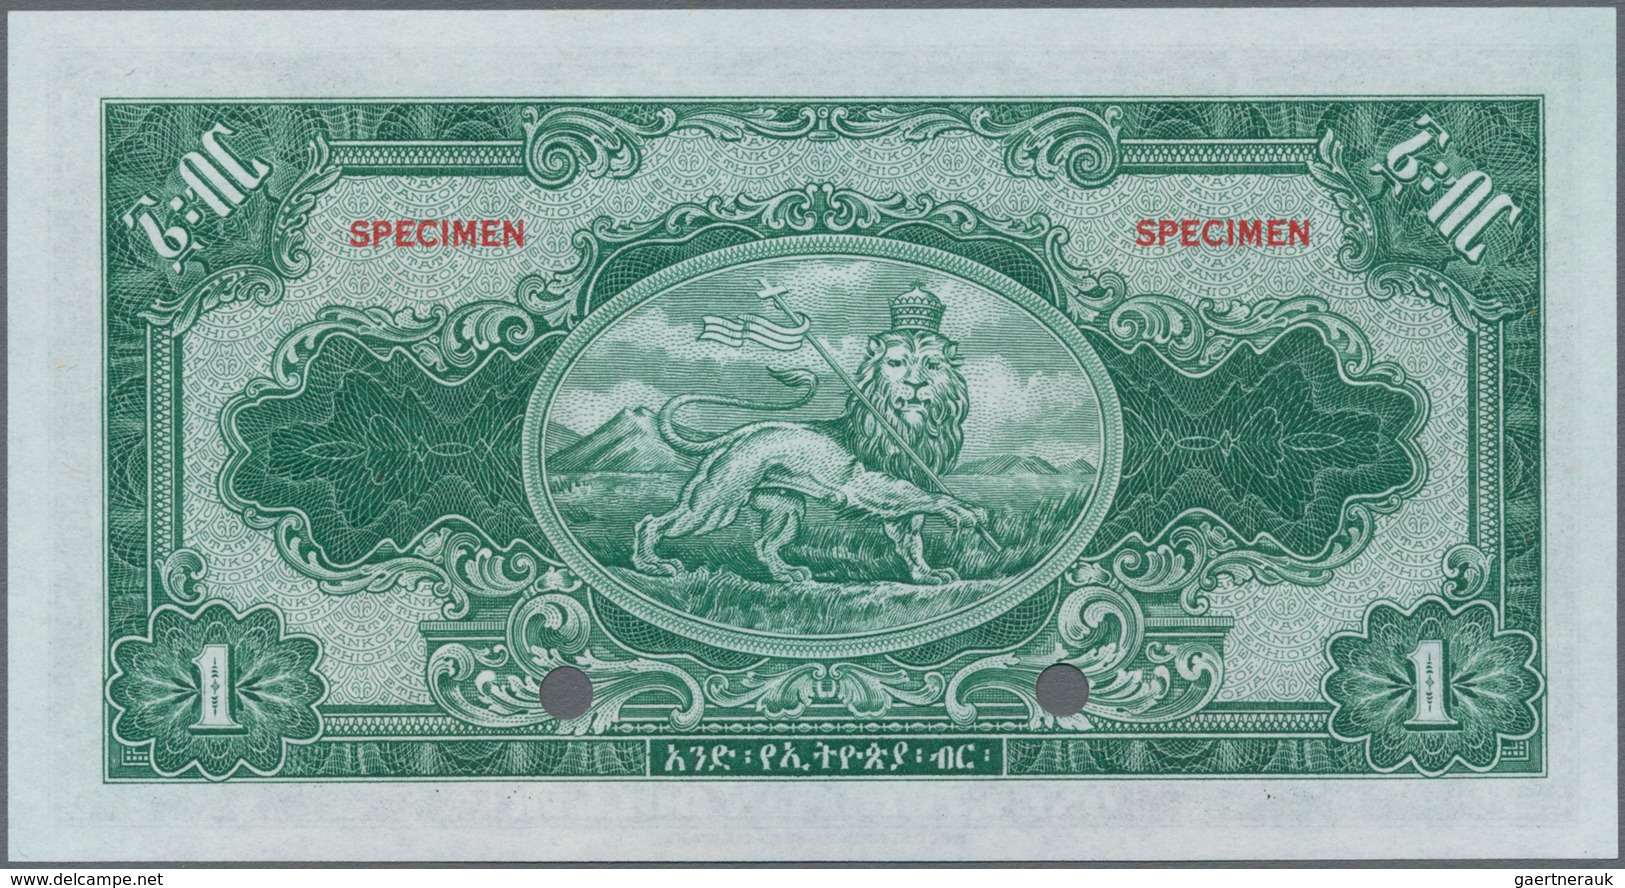 Ethiopia / Äthiopien: The State Bank Of Ethiopia 1 Dollar ND(1945) SPECIMEN With Signature Rozell, P - Ethiopie